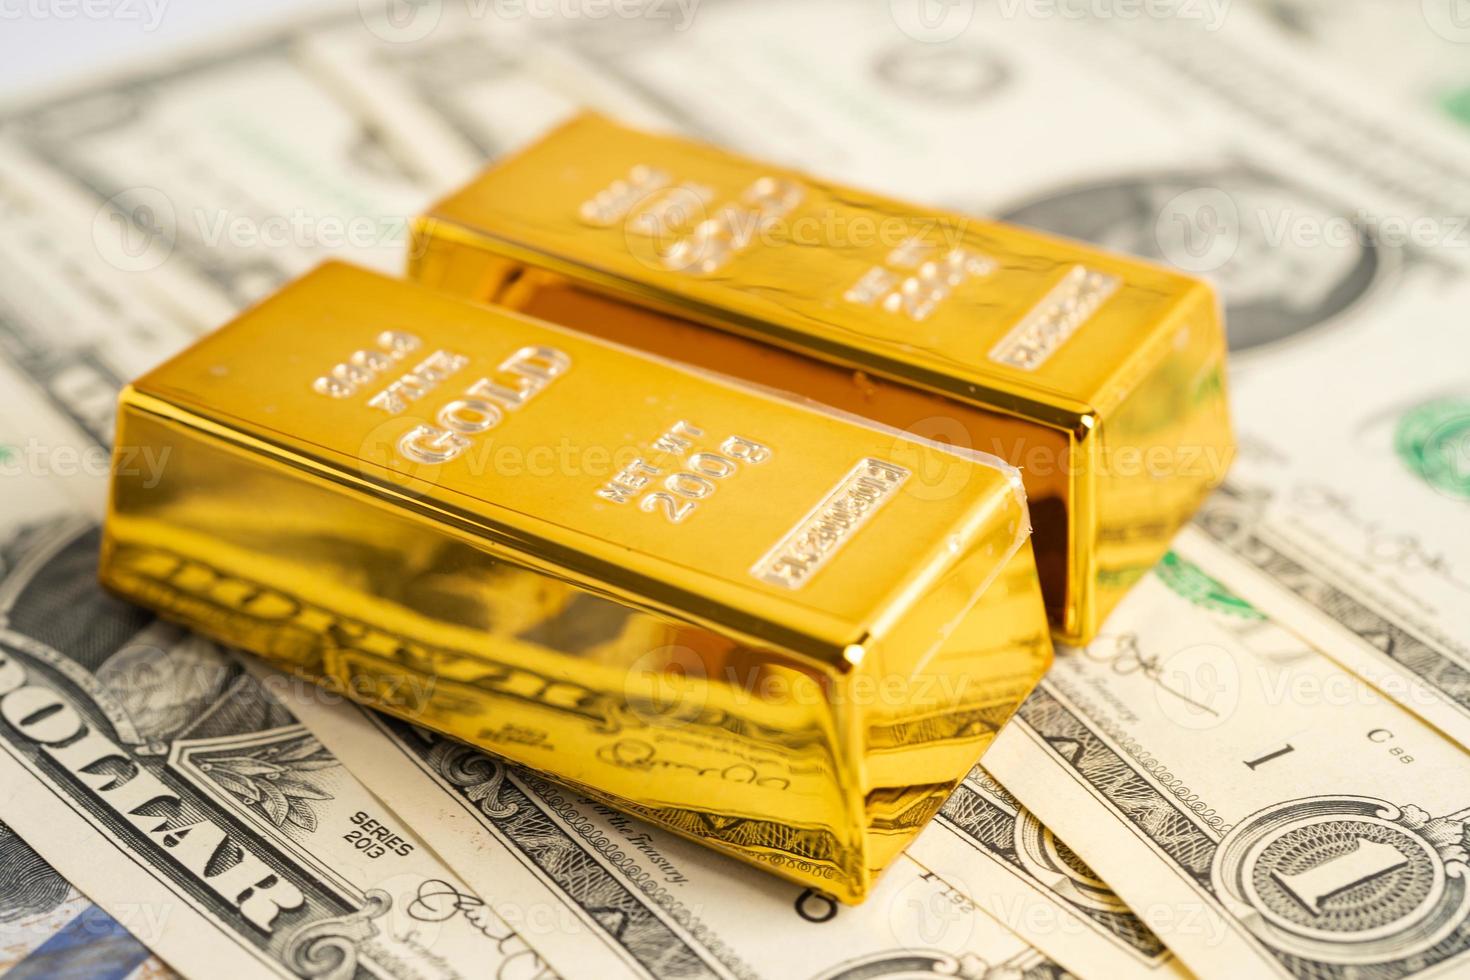 guld bar på oss dollar sedlar pengar, ekonomi finansiera utbyta handel investering begrepp. foto